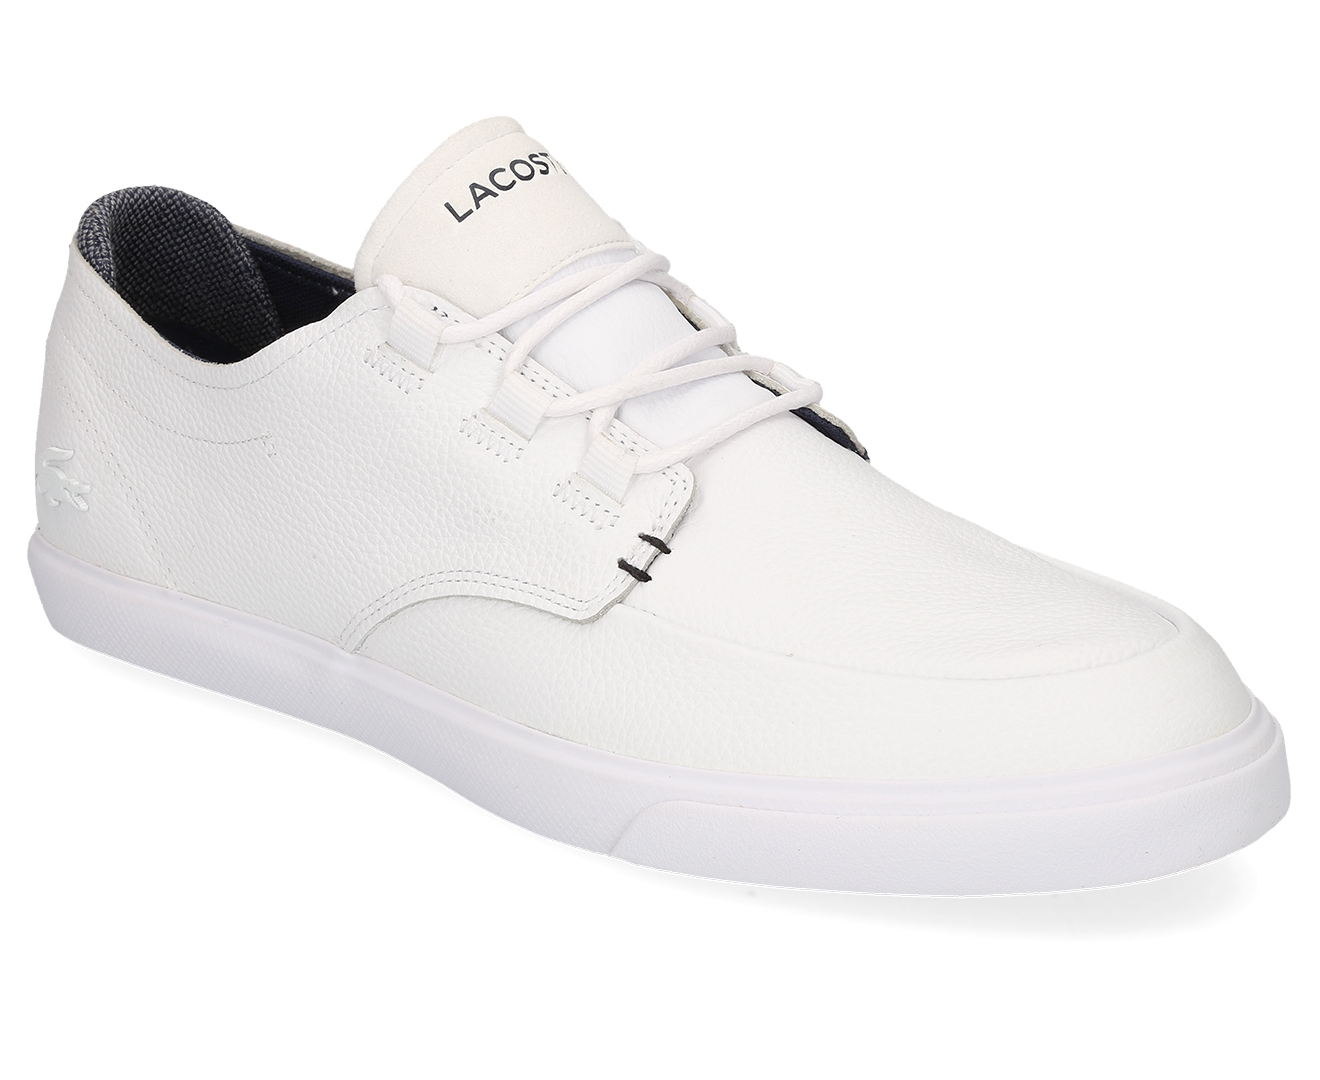 Lacoste Men's Esparre Deck Shoe - White/Navy | Catch.co.nz